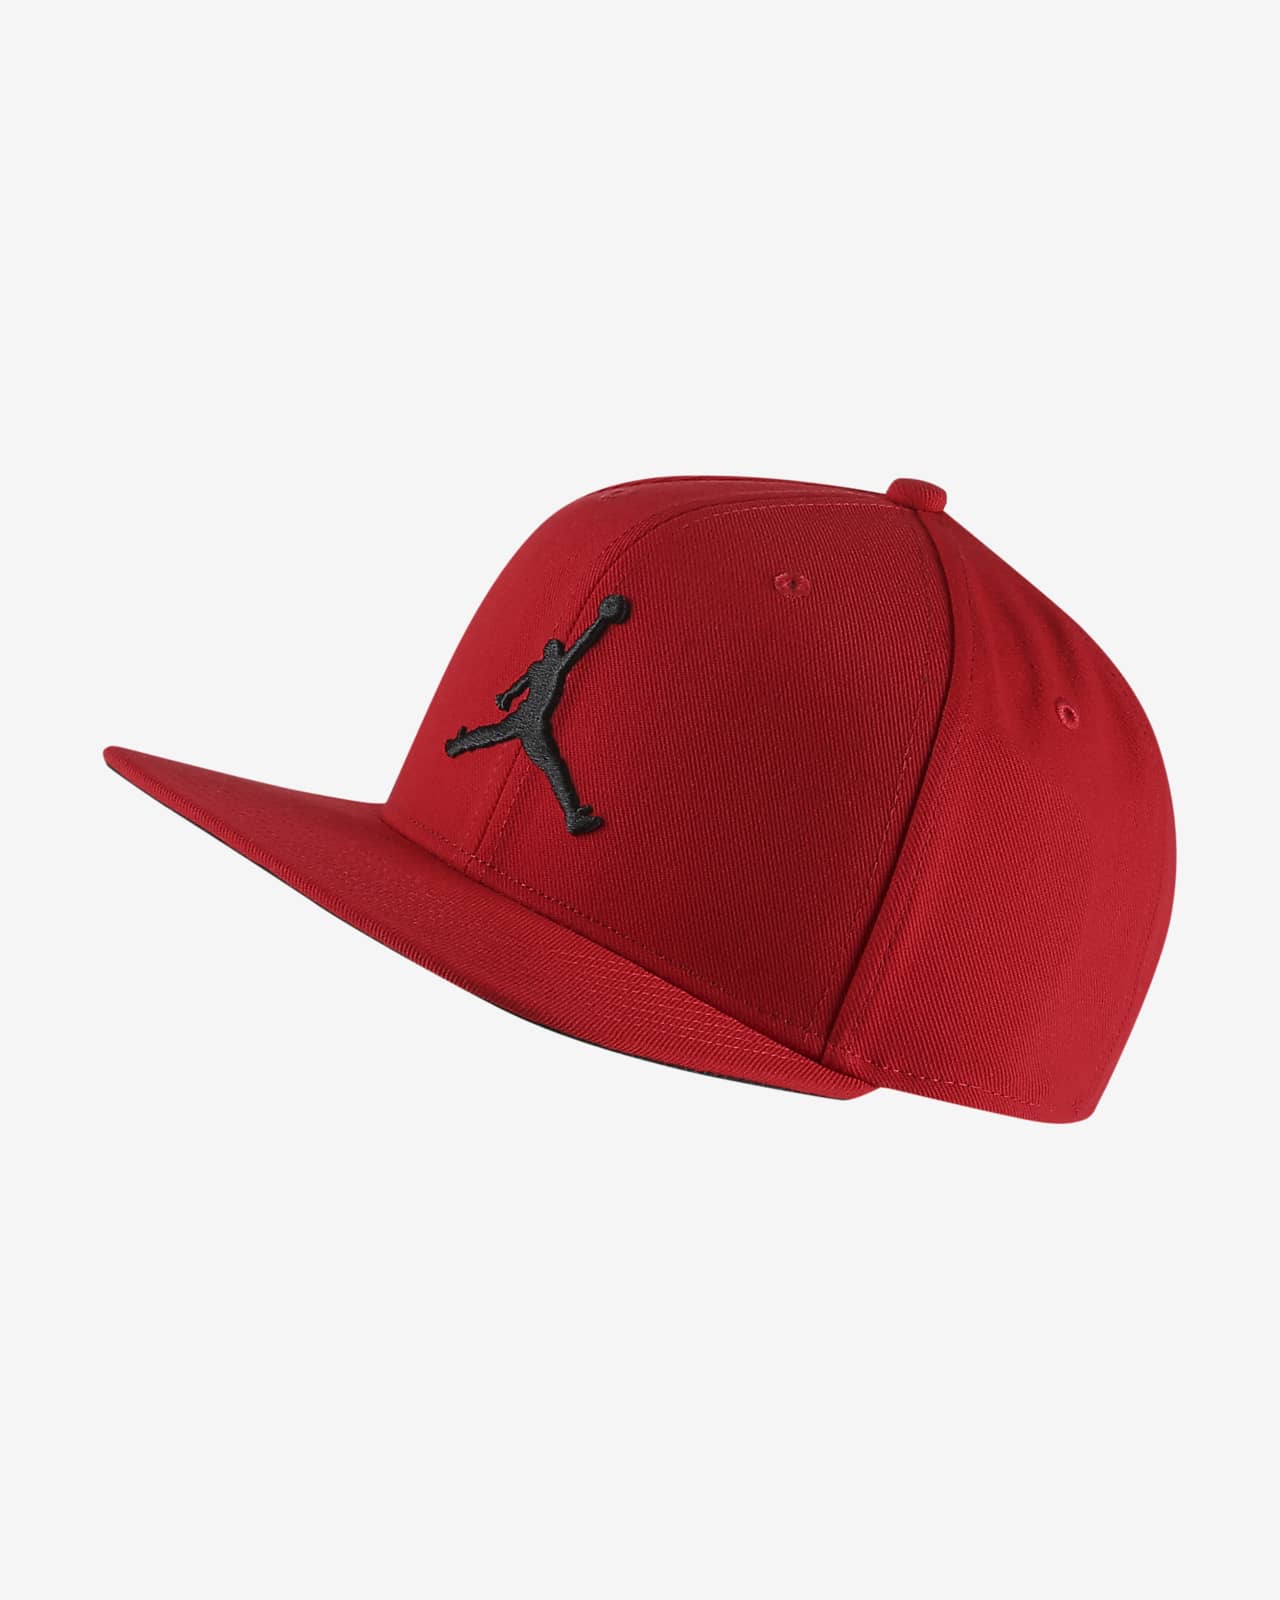 jordan red hat